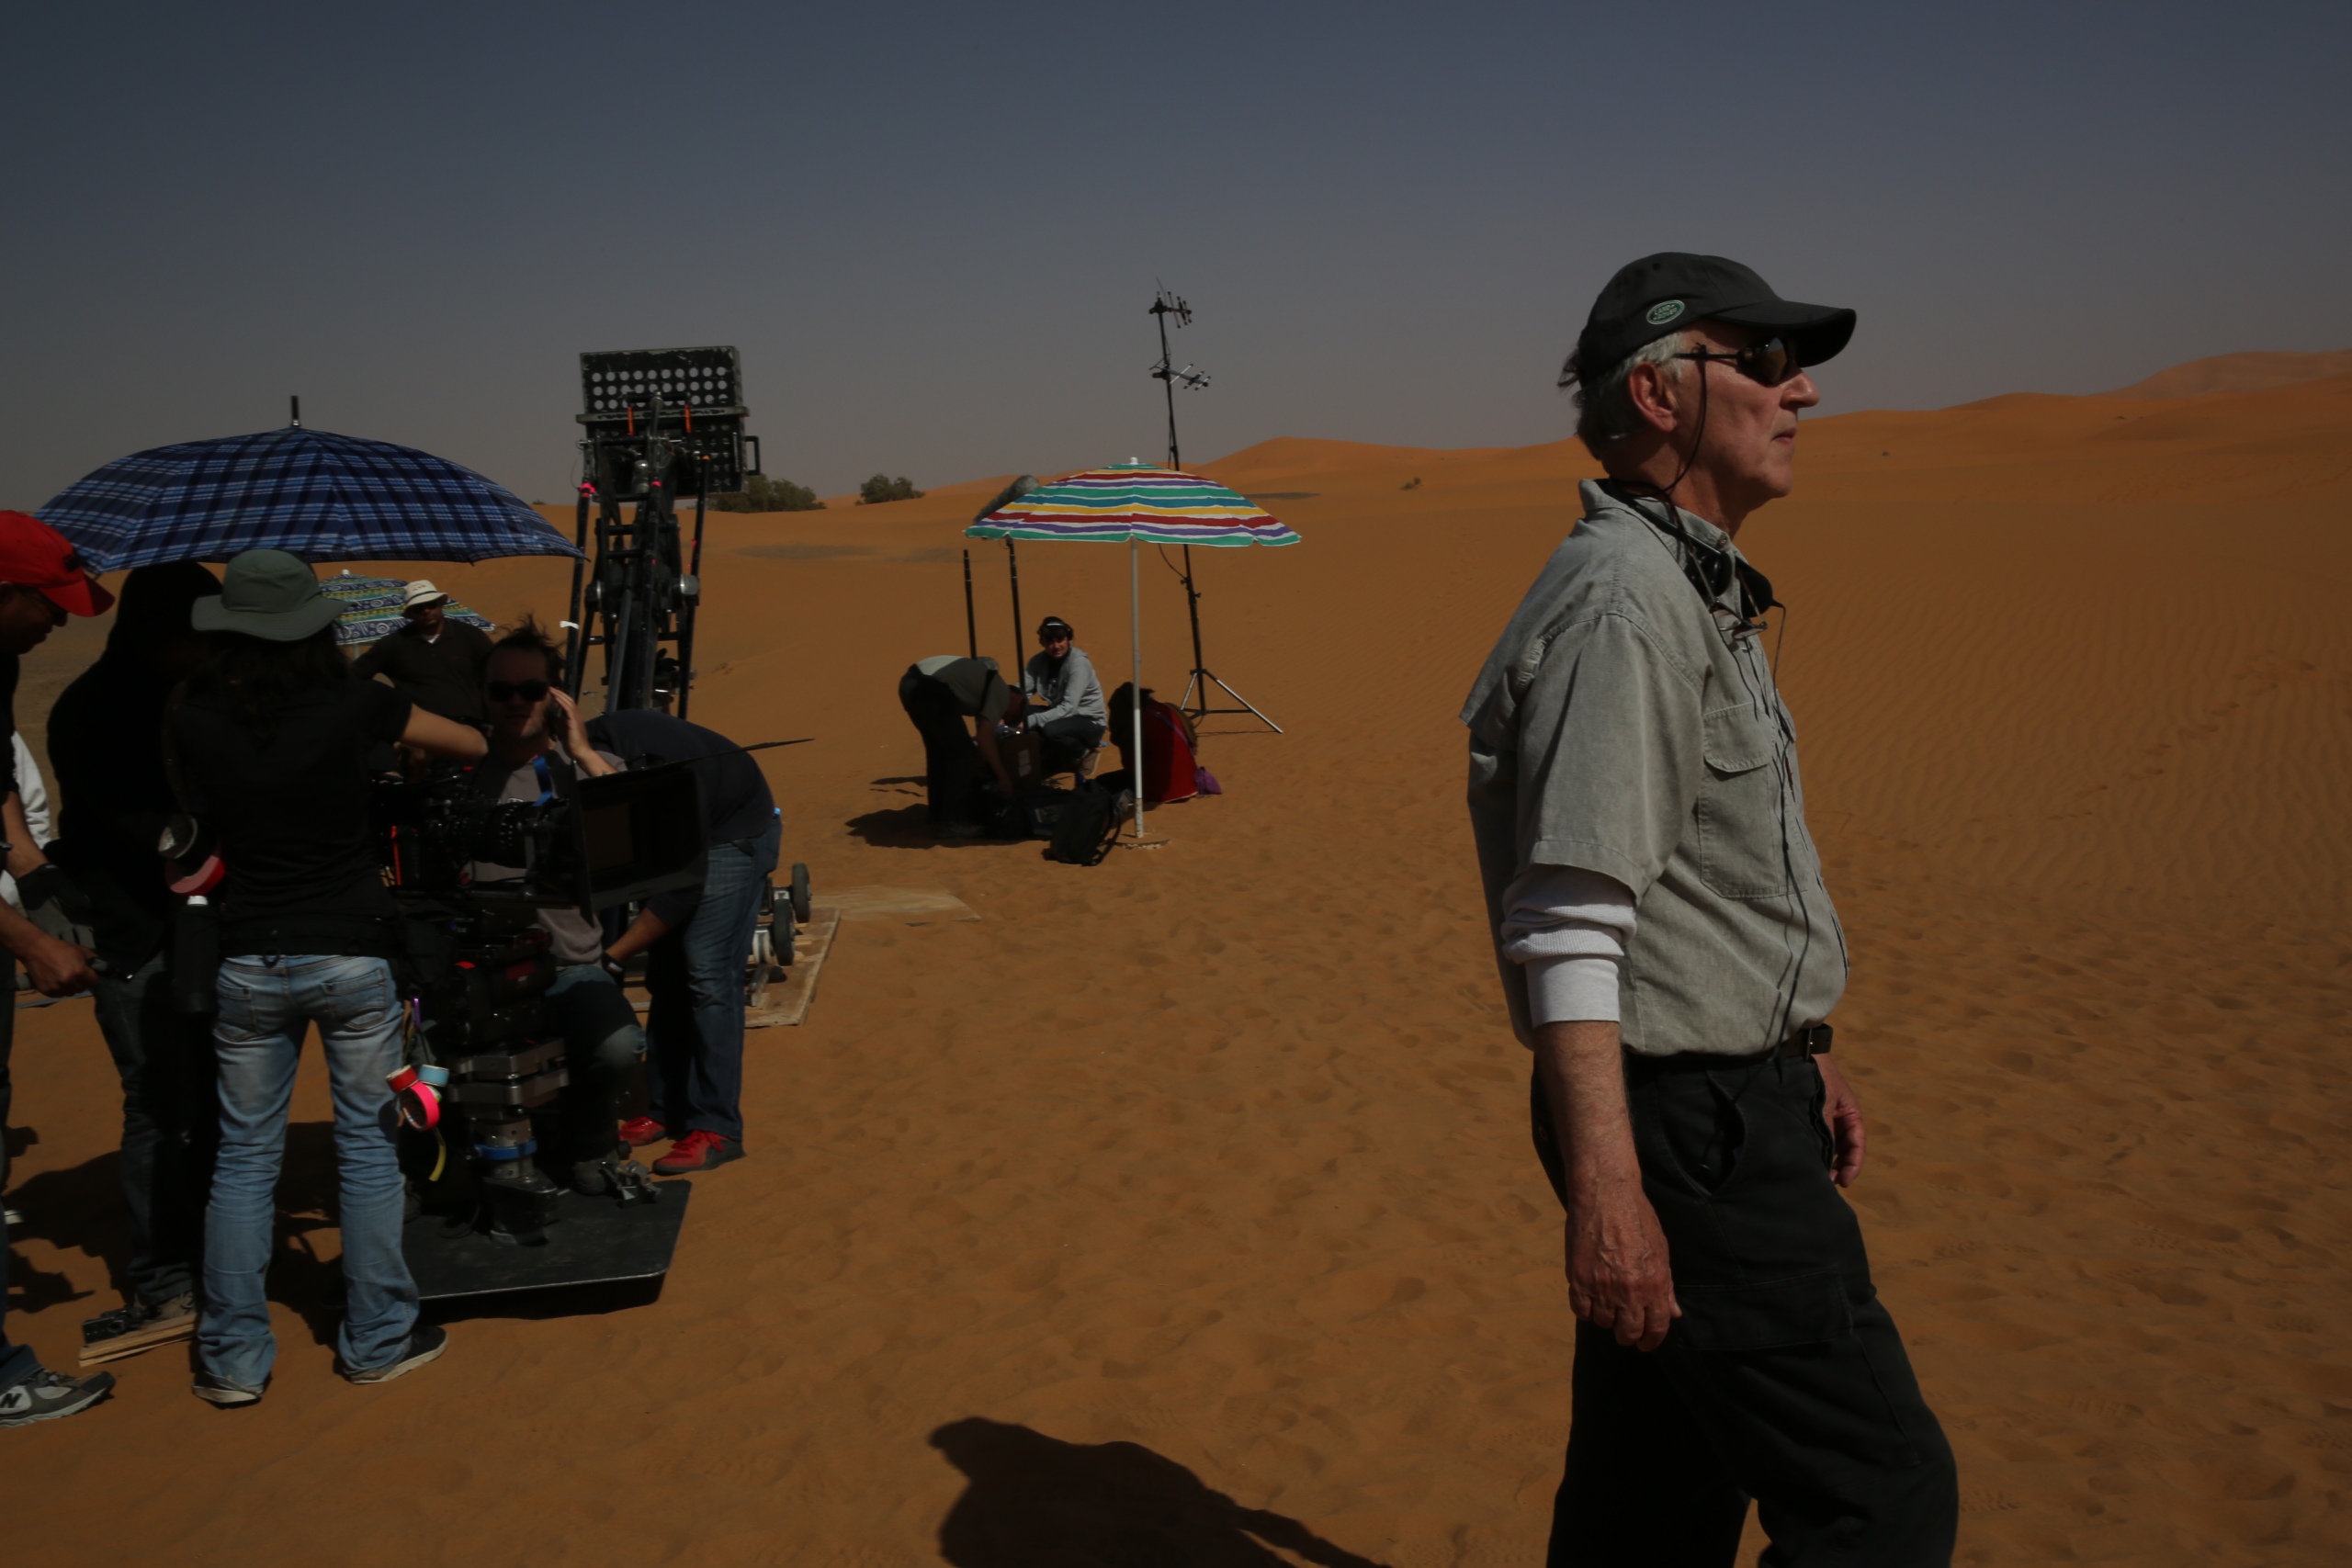 Werner Herzog steht in der Wüste, rechts im Hintergrund ist ein Filmteam. Herzog trägt eine Kappe, Sonnenbrille, ein Helles Hemd und eine dunkle Hose. 